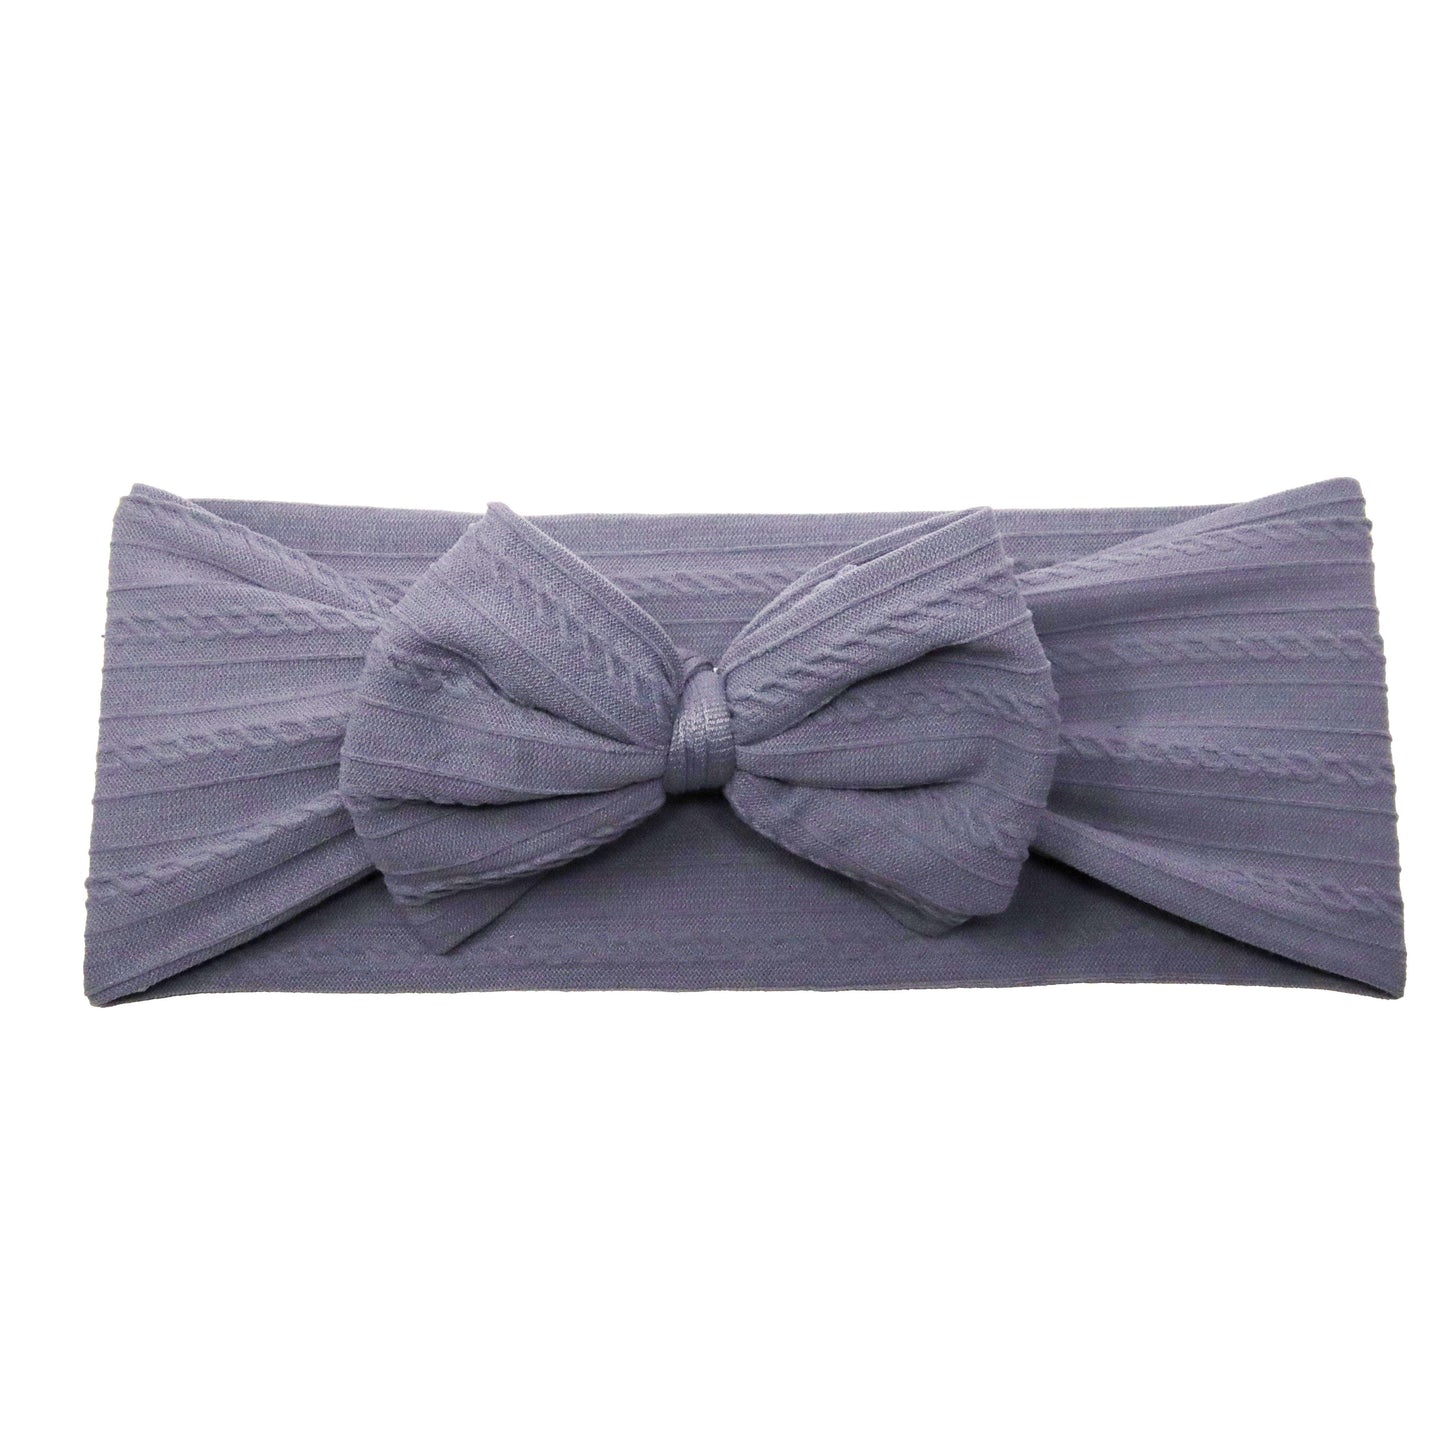 Grey Braid Knit Bow Headwrap 4"